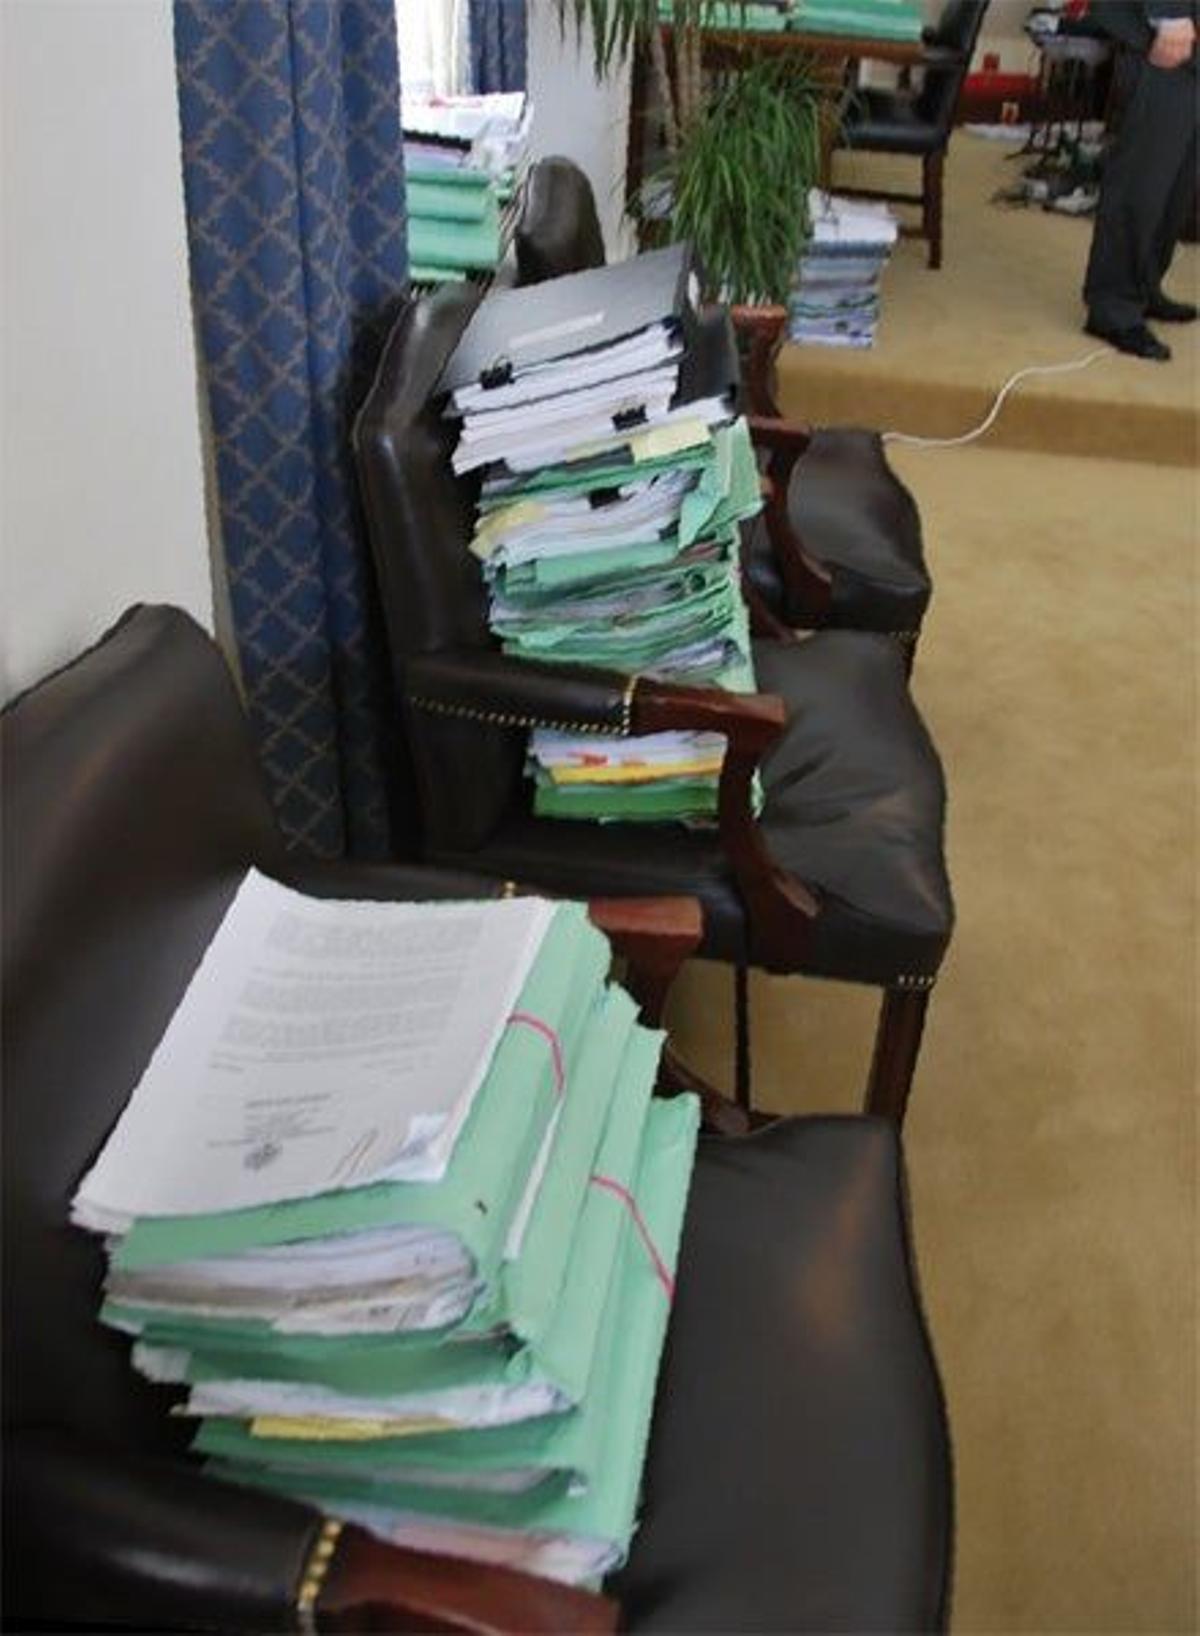 El despacho del primer ministro tiene carpetas y dossieres amontonados por todas partes.